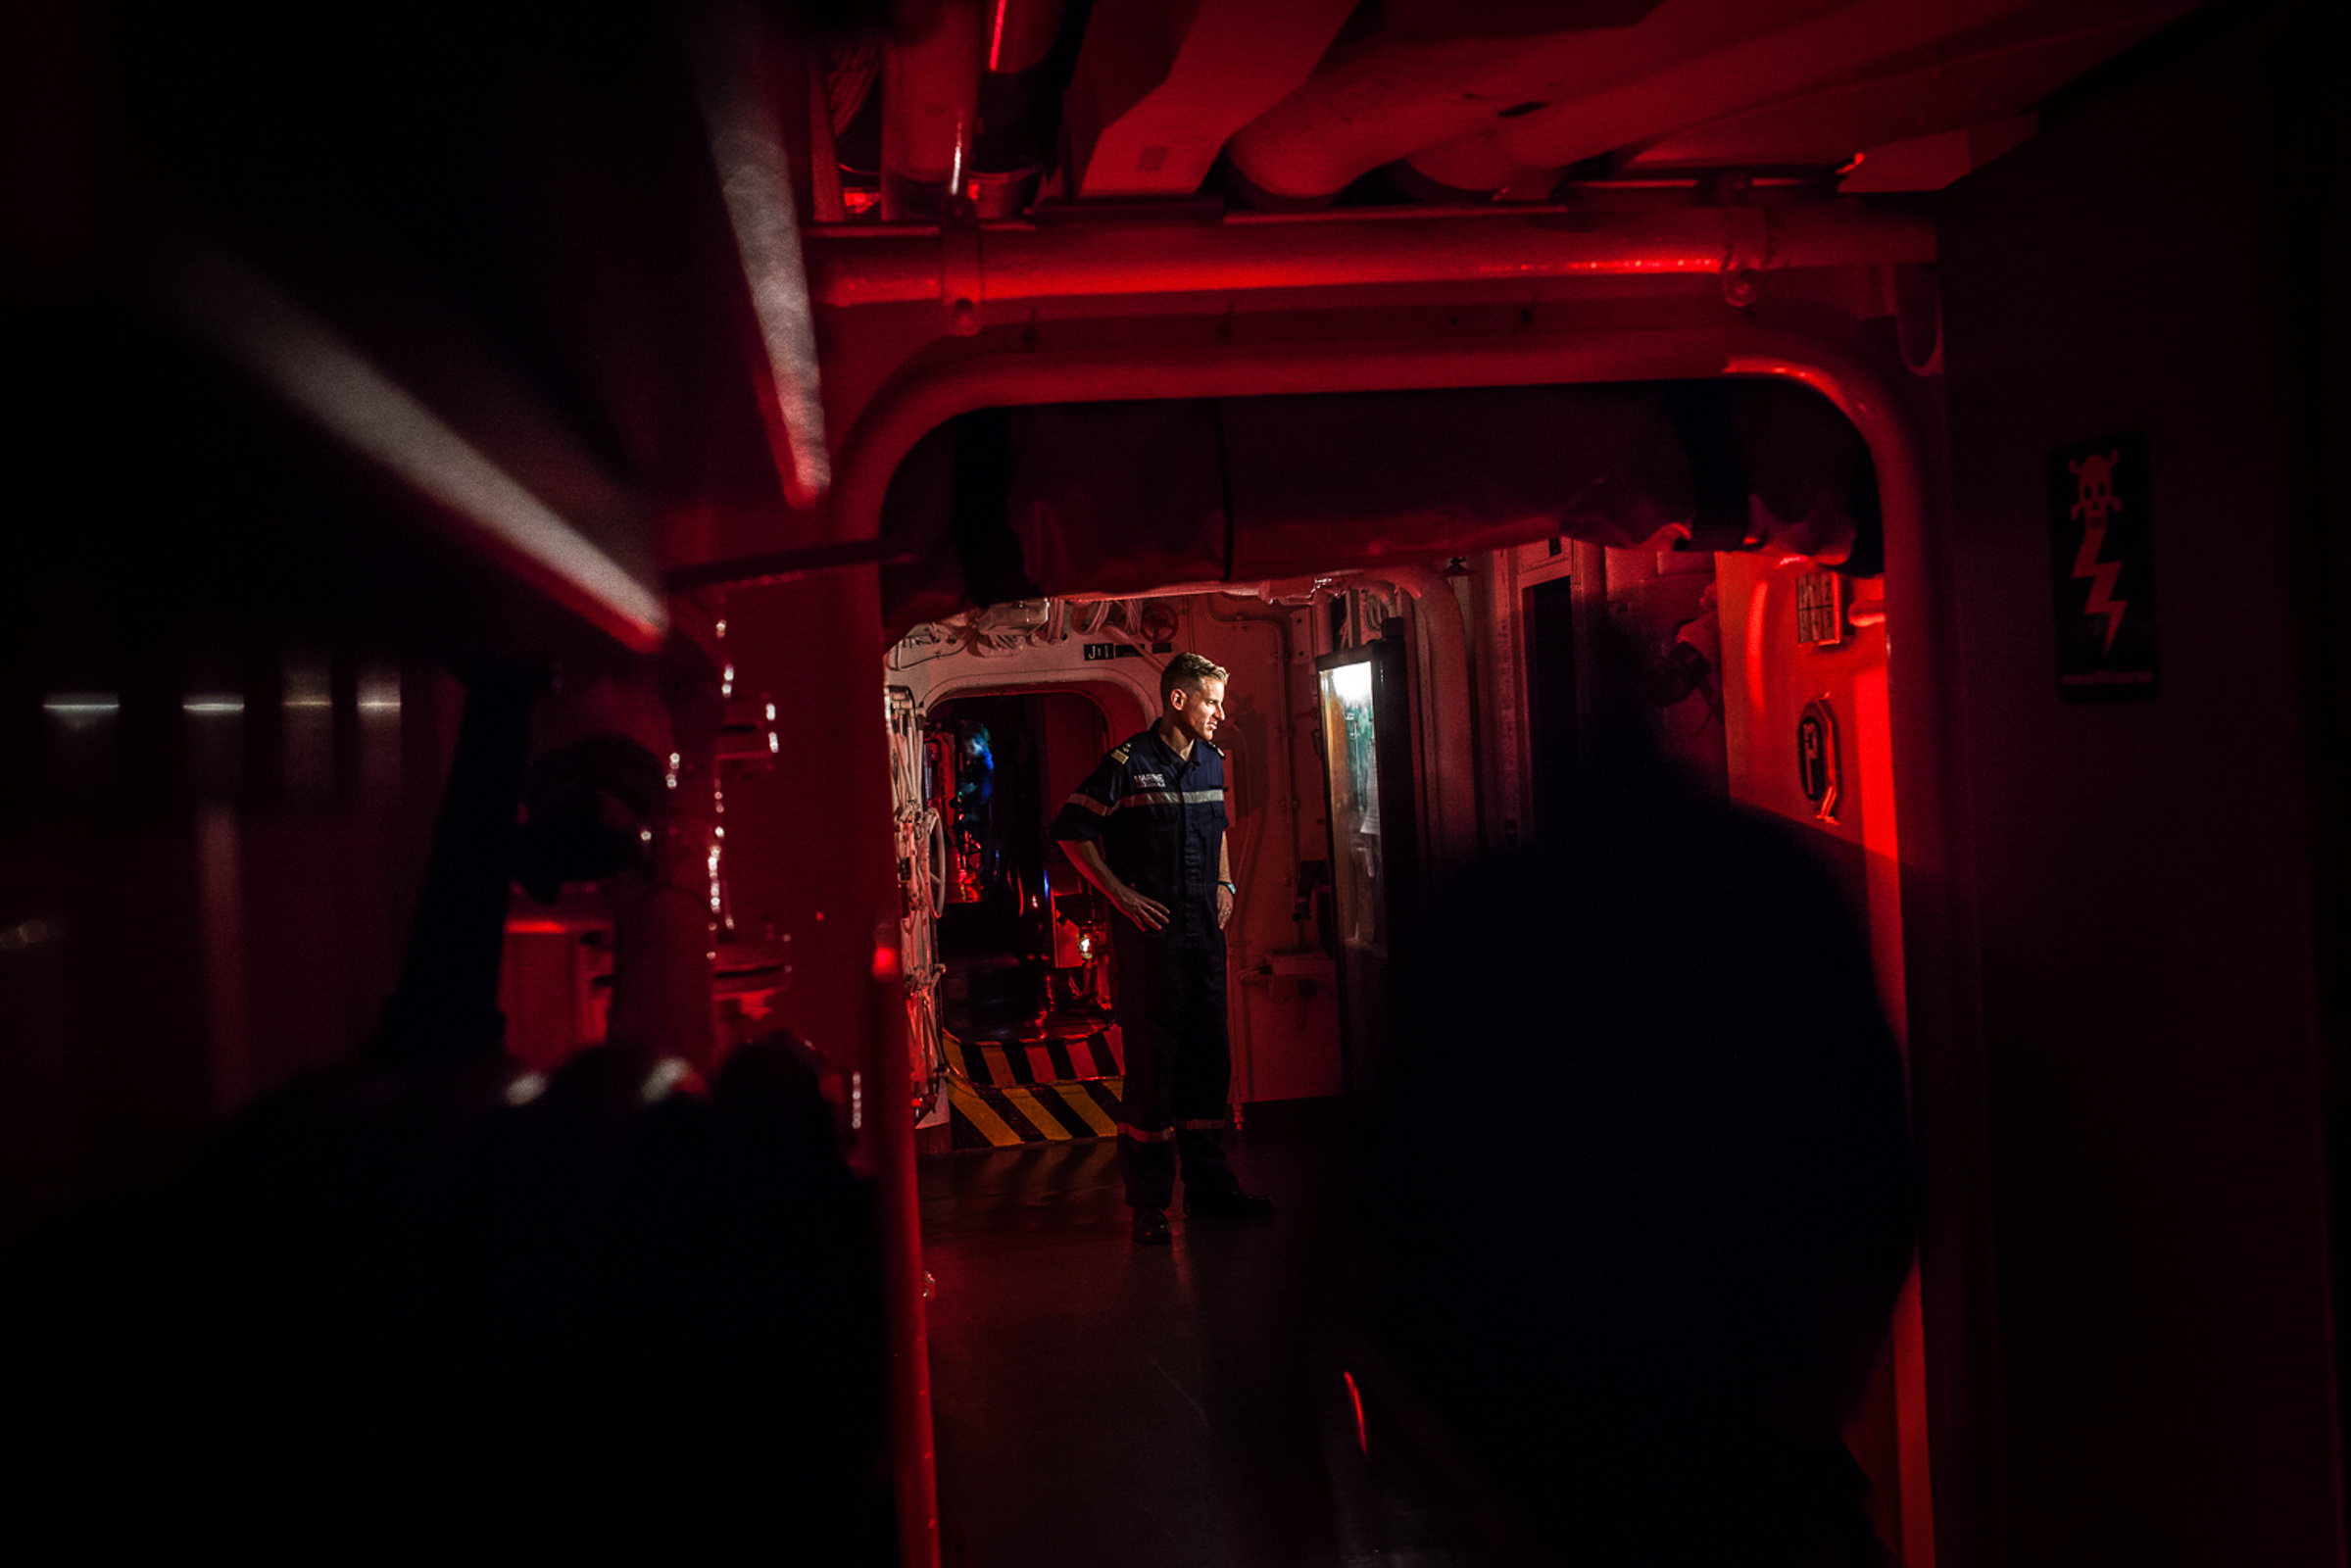 Mer méditerrannée, 30.11.2015. Tour de garde nocturne à bord de la frégate anti-aérienne le "Jean bart".